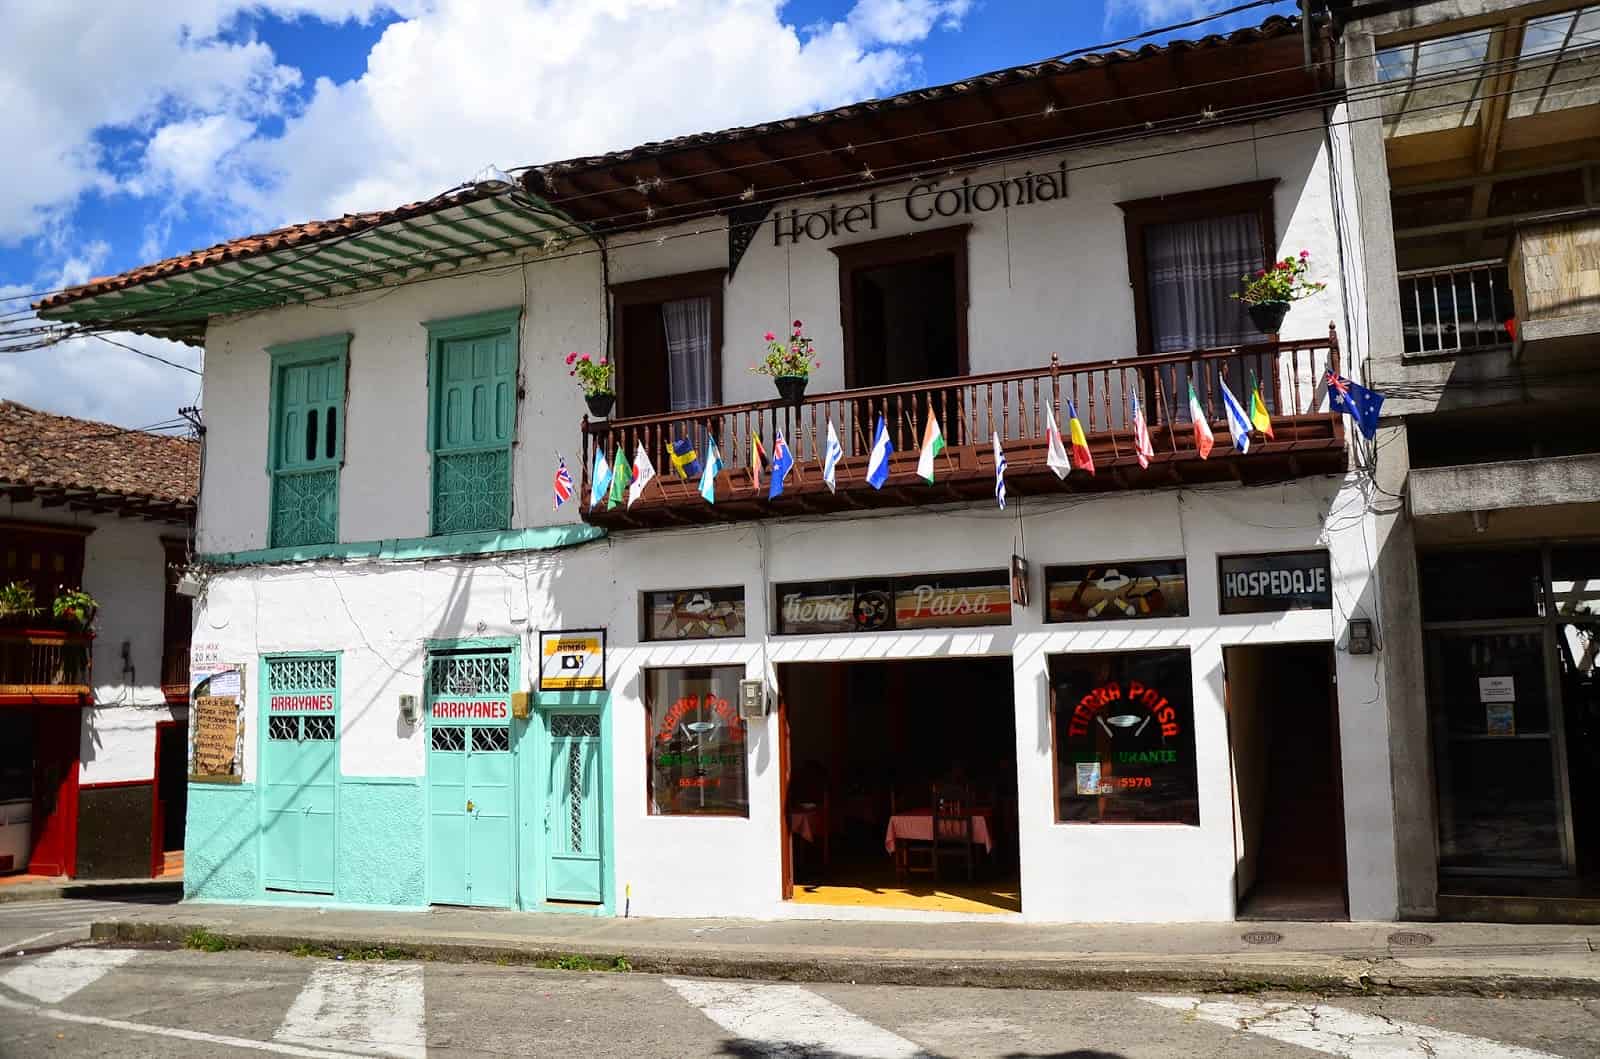 Hotel Colonial in Salamina, Caldas, Colombia